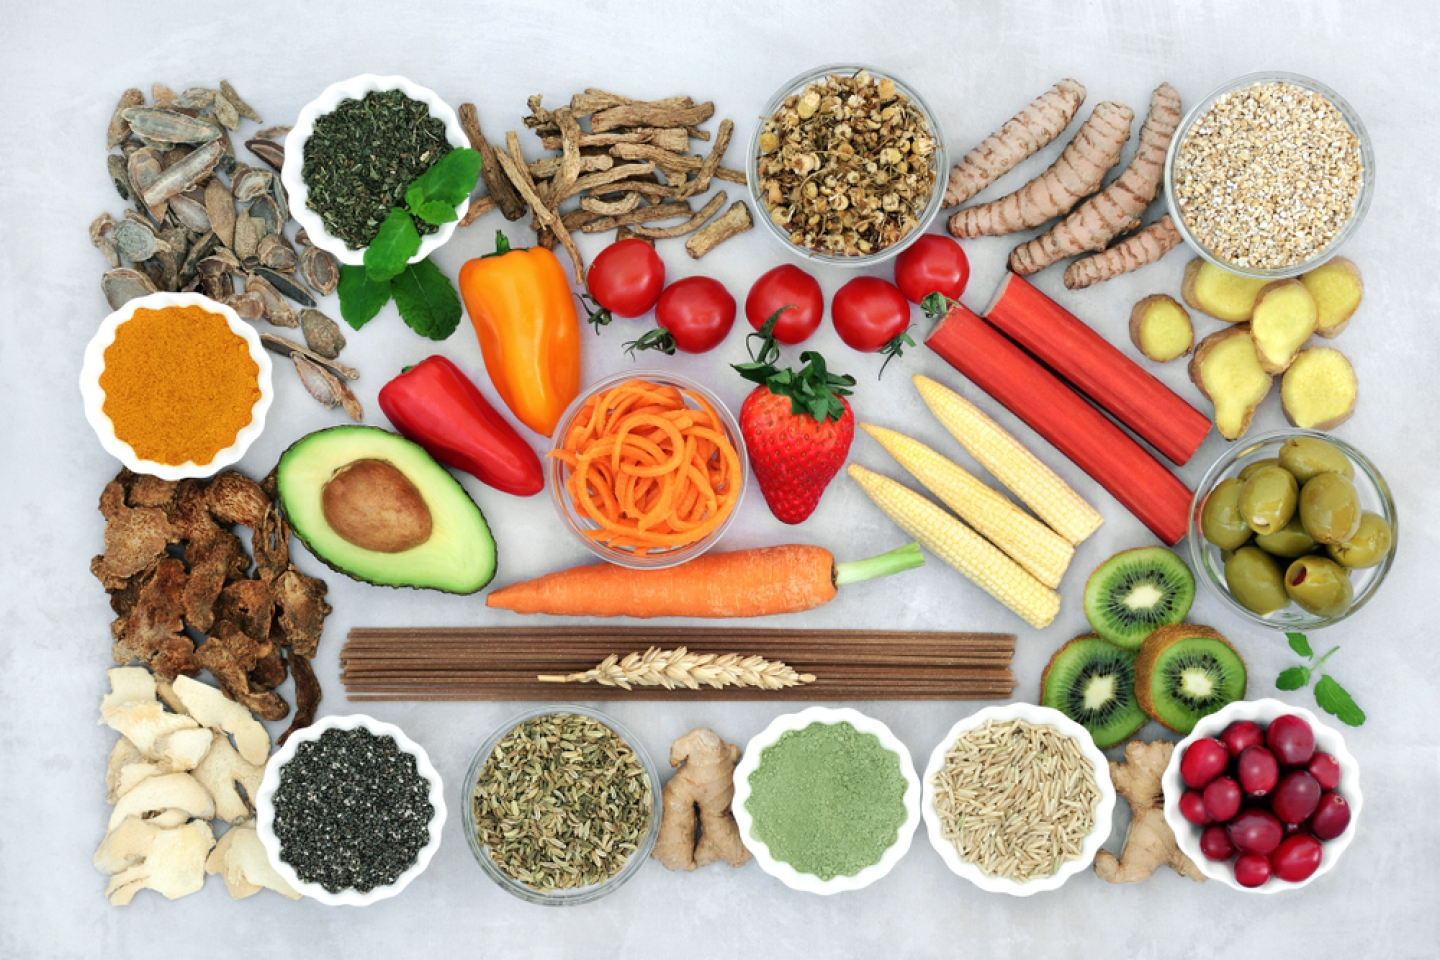 Health food & herbs